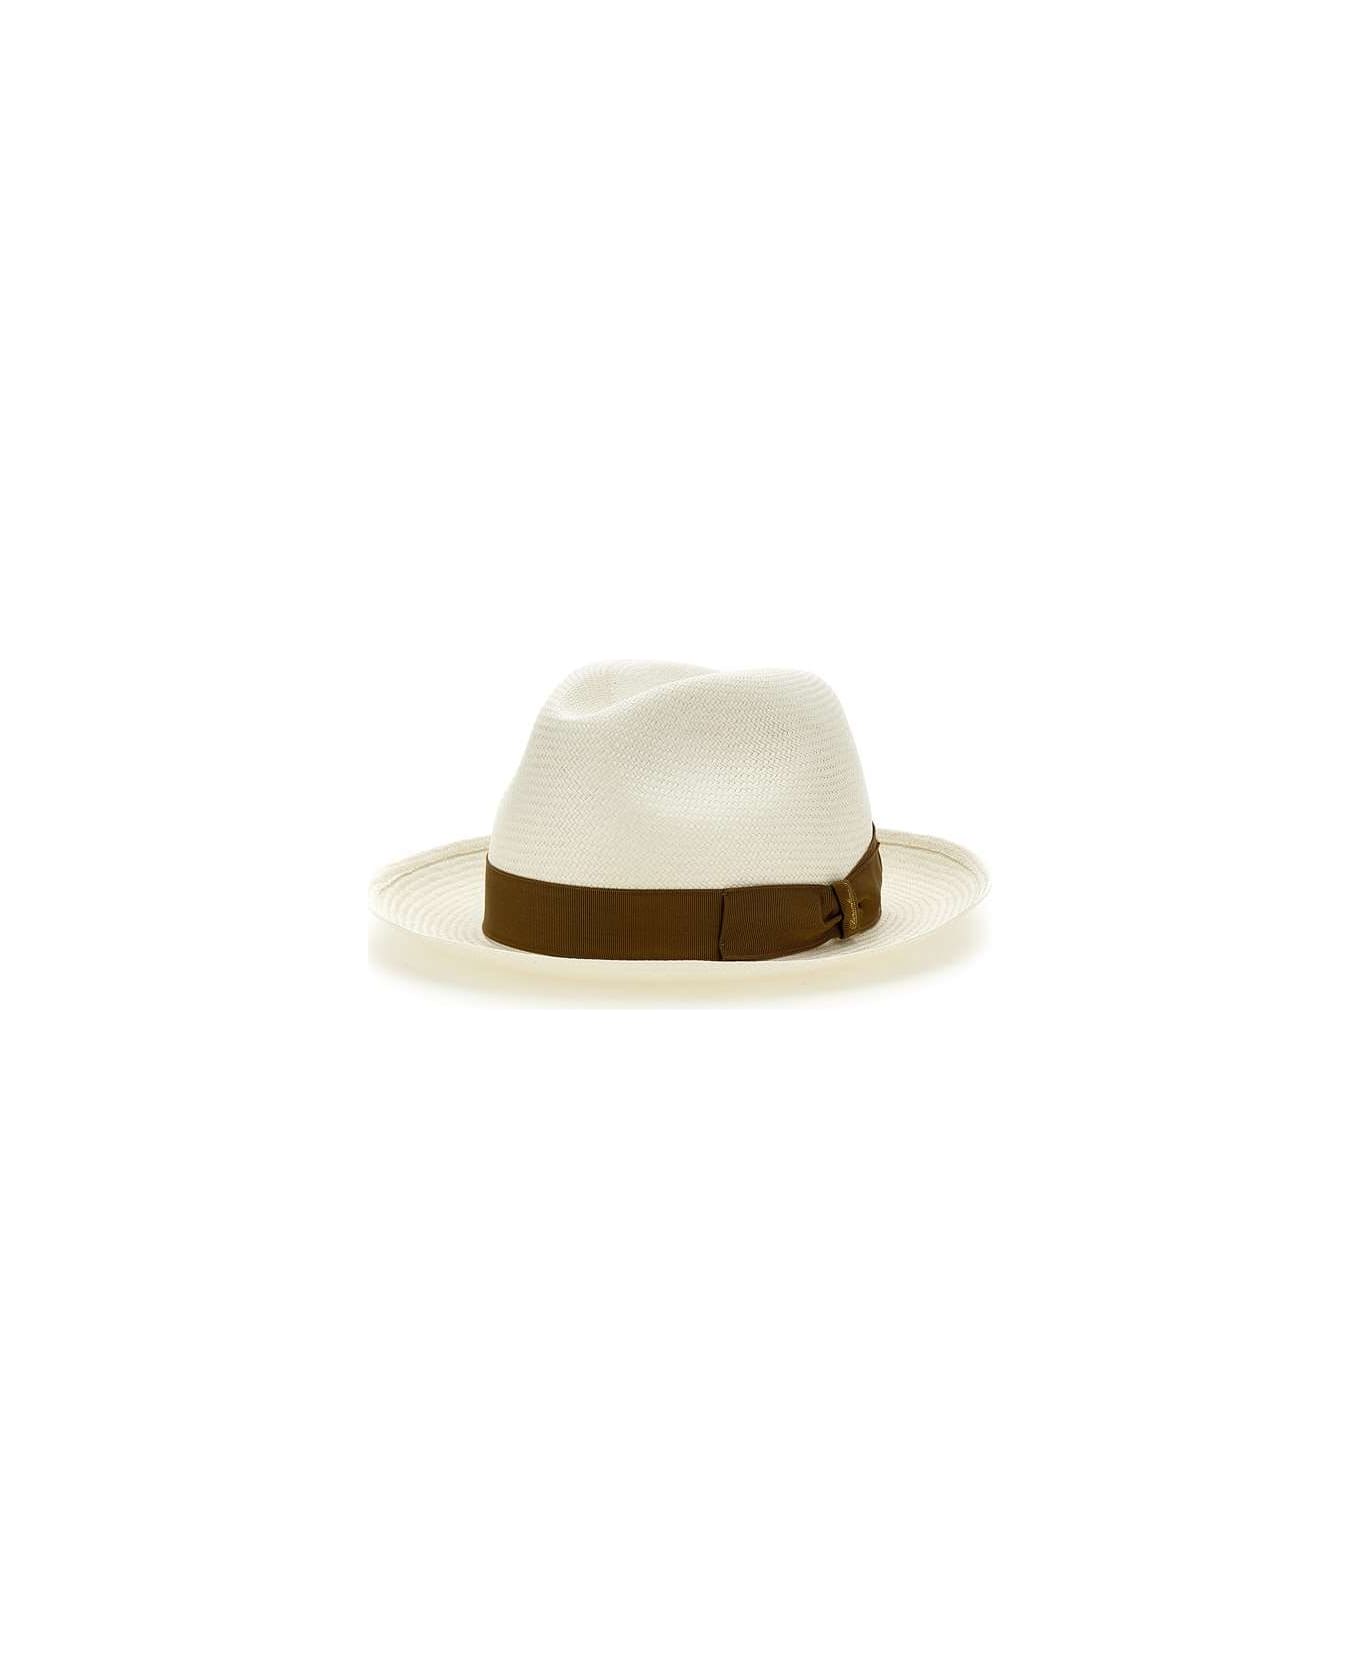 Borsalino "panama" Straw Hat - WHITE